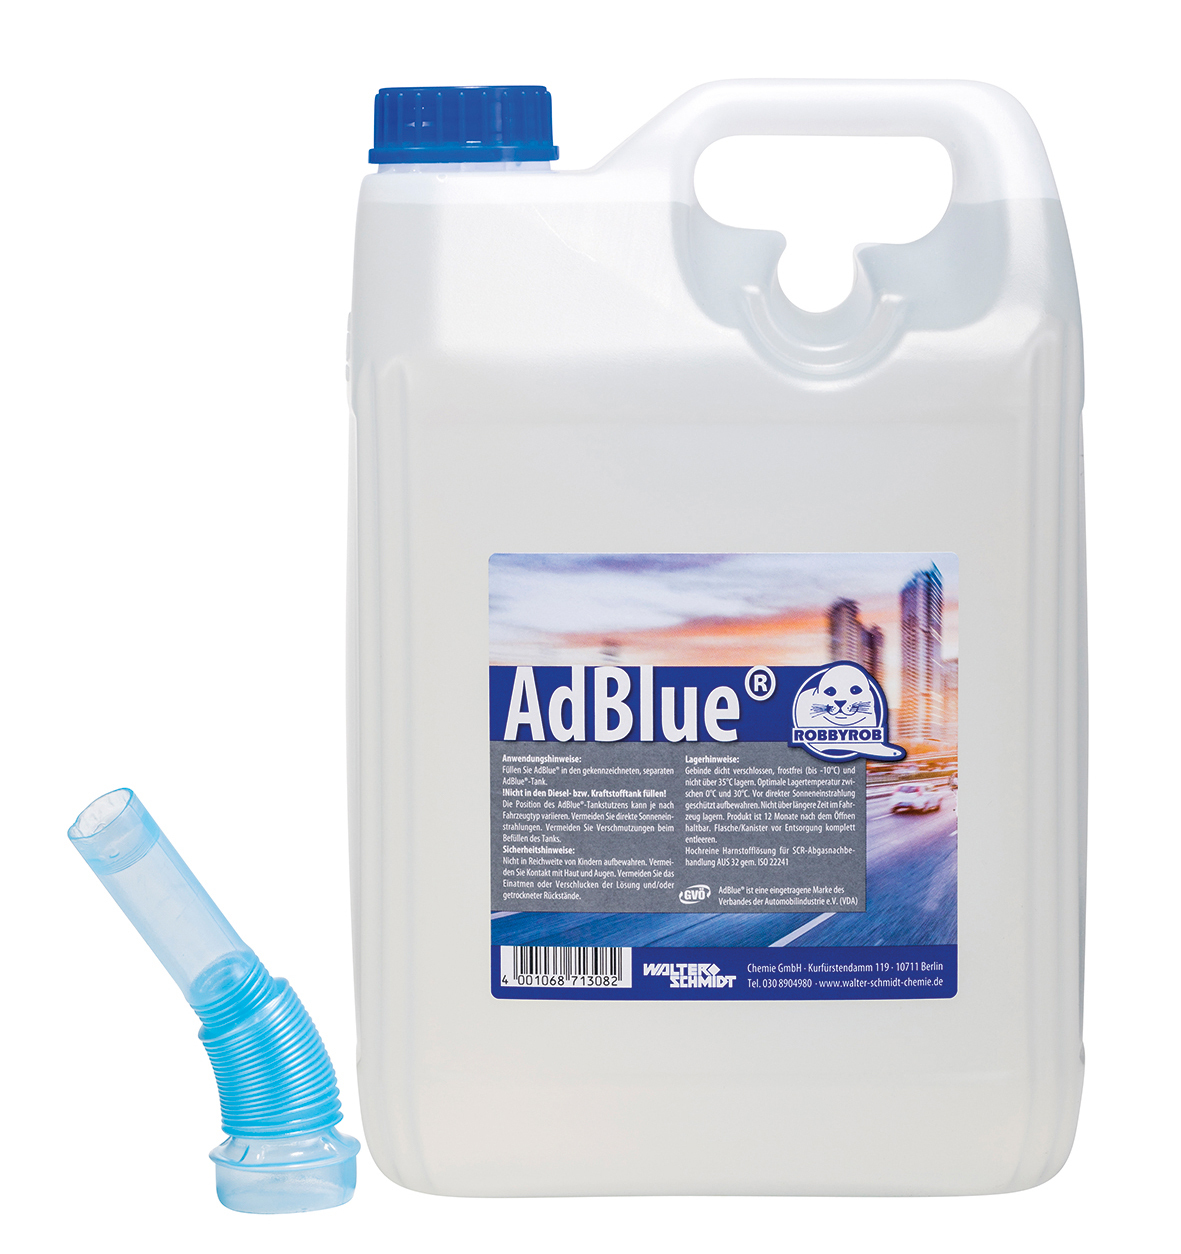 AdBlue® in 5 Liter: Ideal für Kleinfahrzeuge und Privatanwender